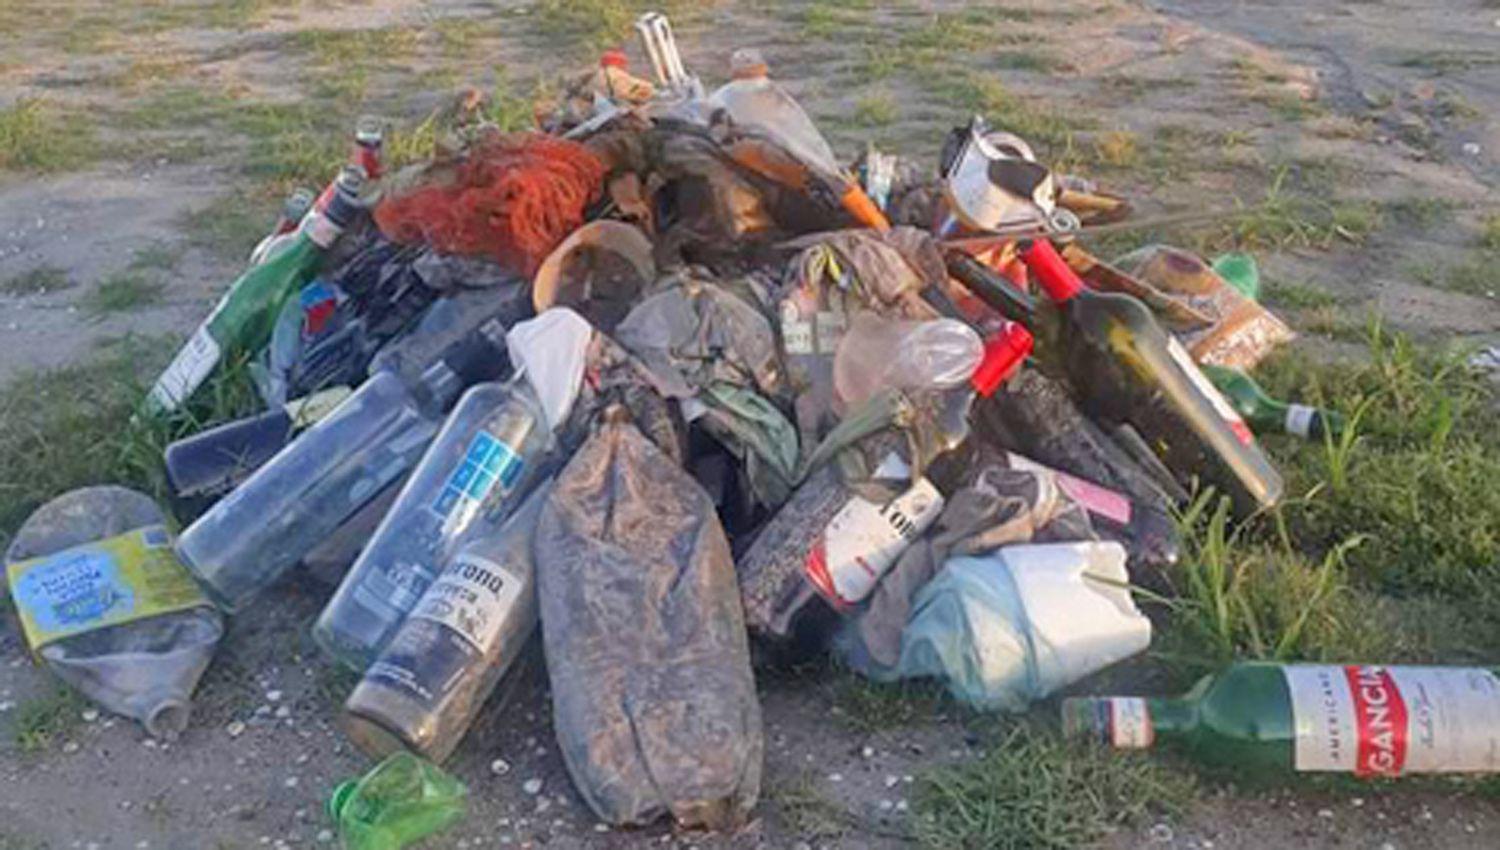 Medio Ambiente Joven hizo una limpieza en la zona del embalse Riacuteo Hondo